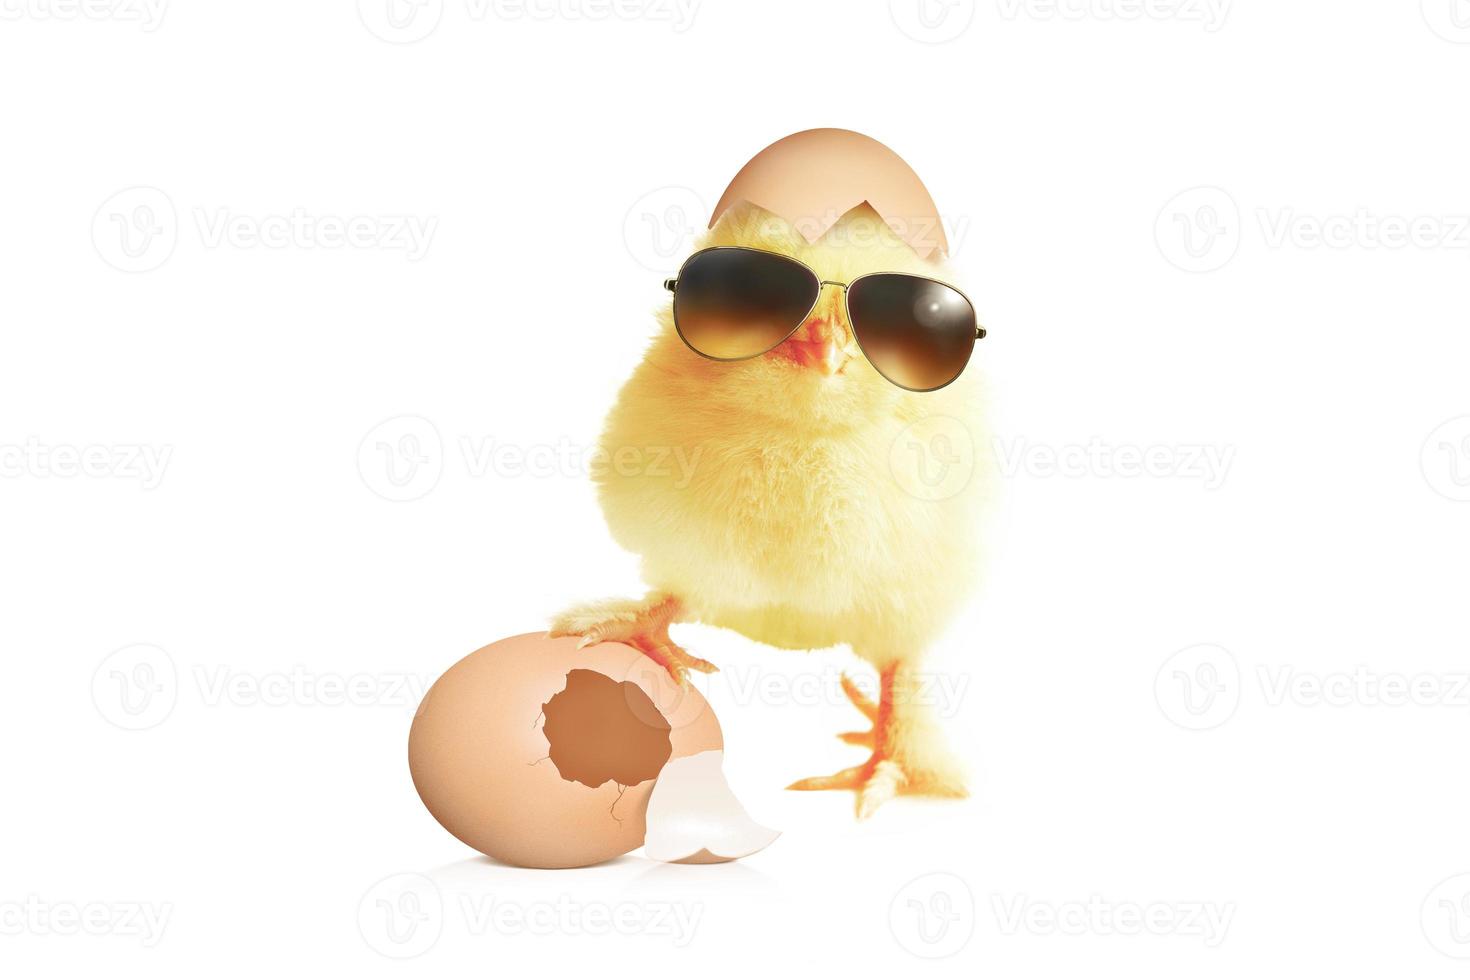 pollito lindo y divertido con gafas de sol y huevos. foto